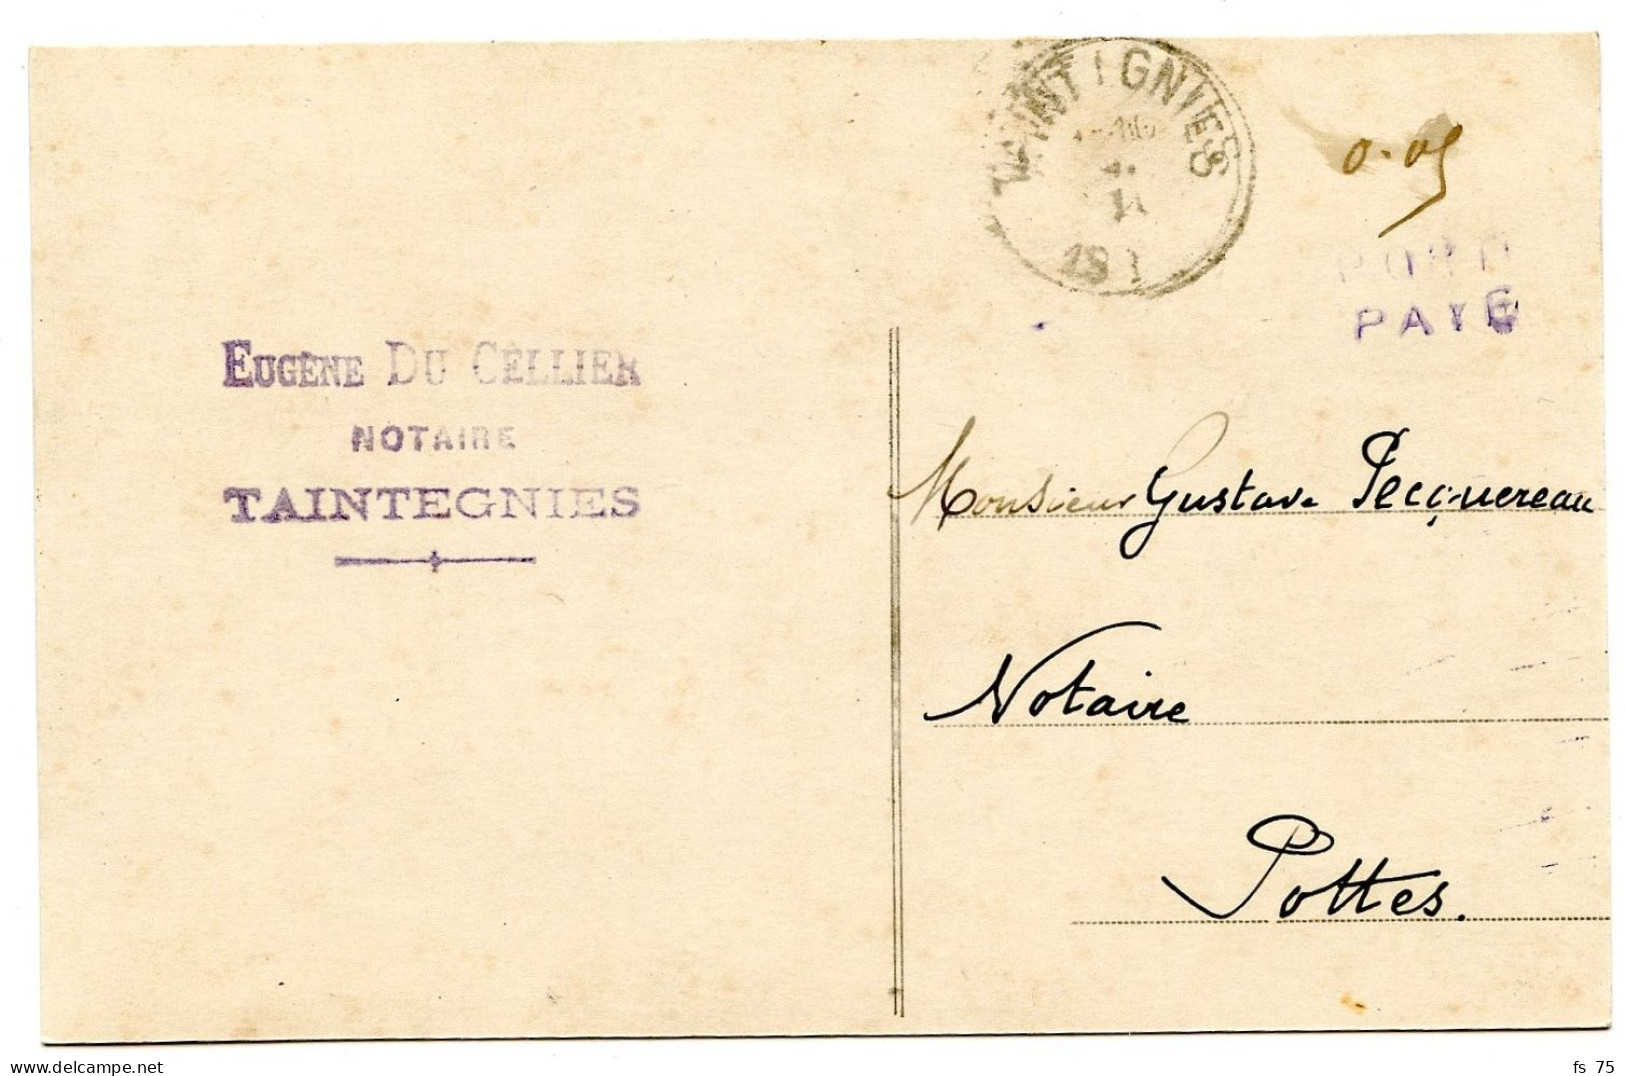 BELGIQUE - SIMPLE CERCLE TAINTEGNIES + 0,05 + GRIFFE PORT PAYE SUR CARTE POSTALE, 1919 - Lettres & Documents